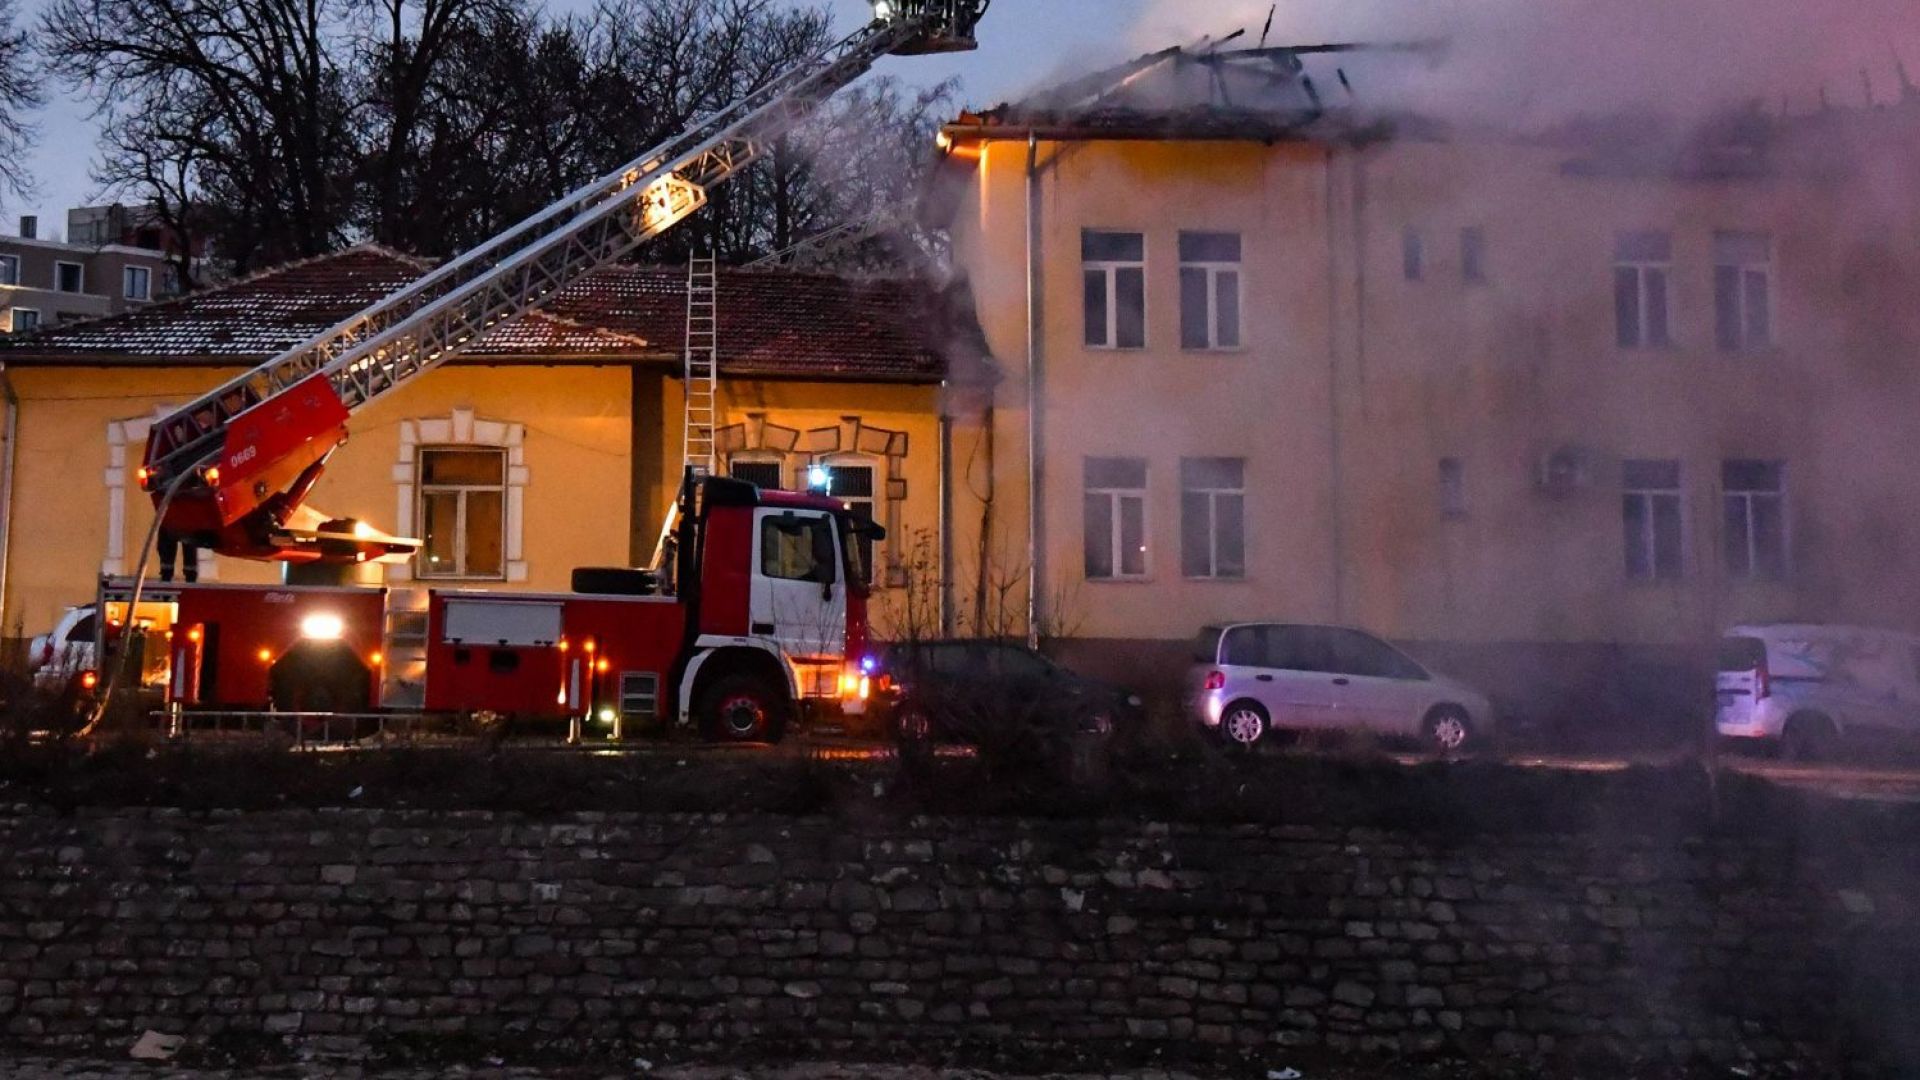 Първи снимки и видео от пожара: Покривът на психодиспансера пламнал за 3-4 секунди